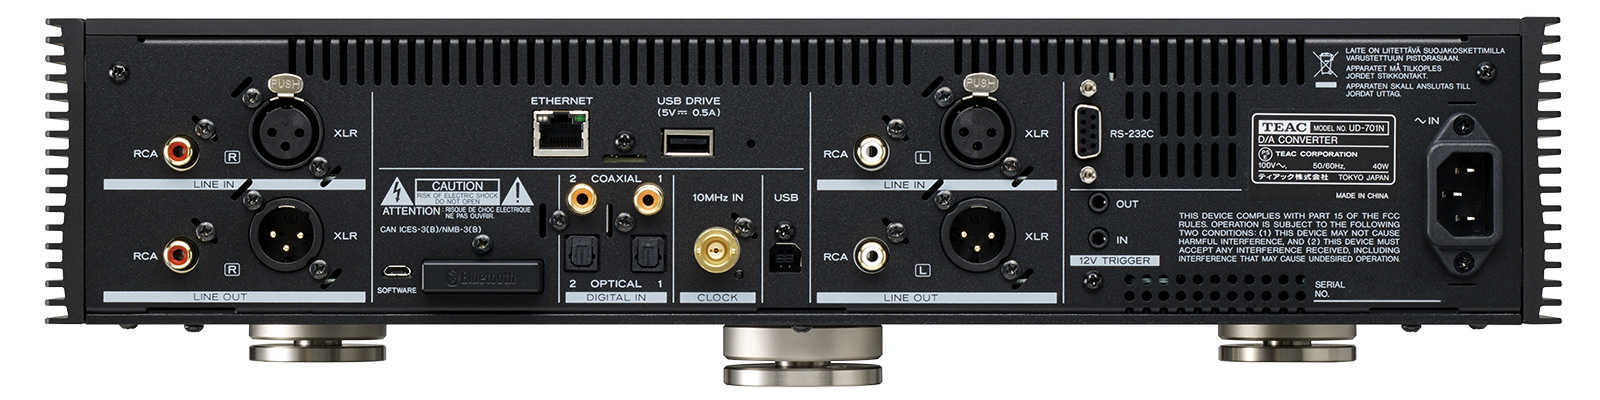 TEAC UD-701N 黑色 USB DAC 網路串流 前級 耳擴 | 金曲音響